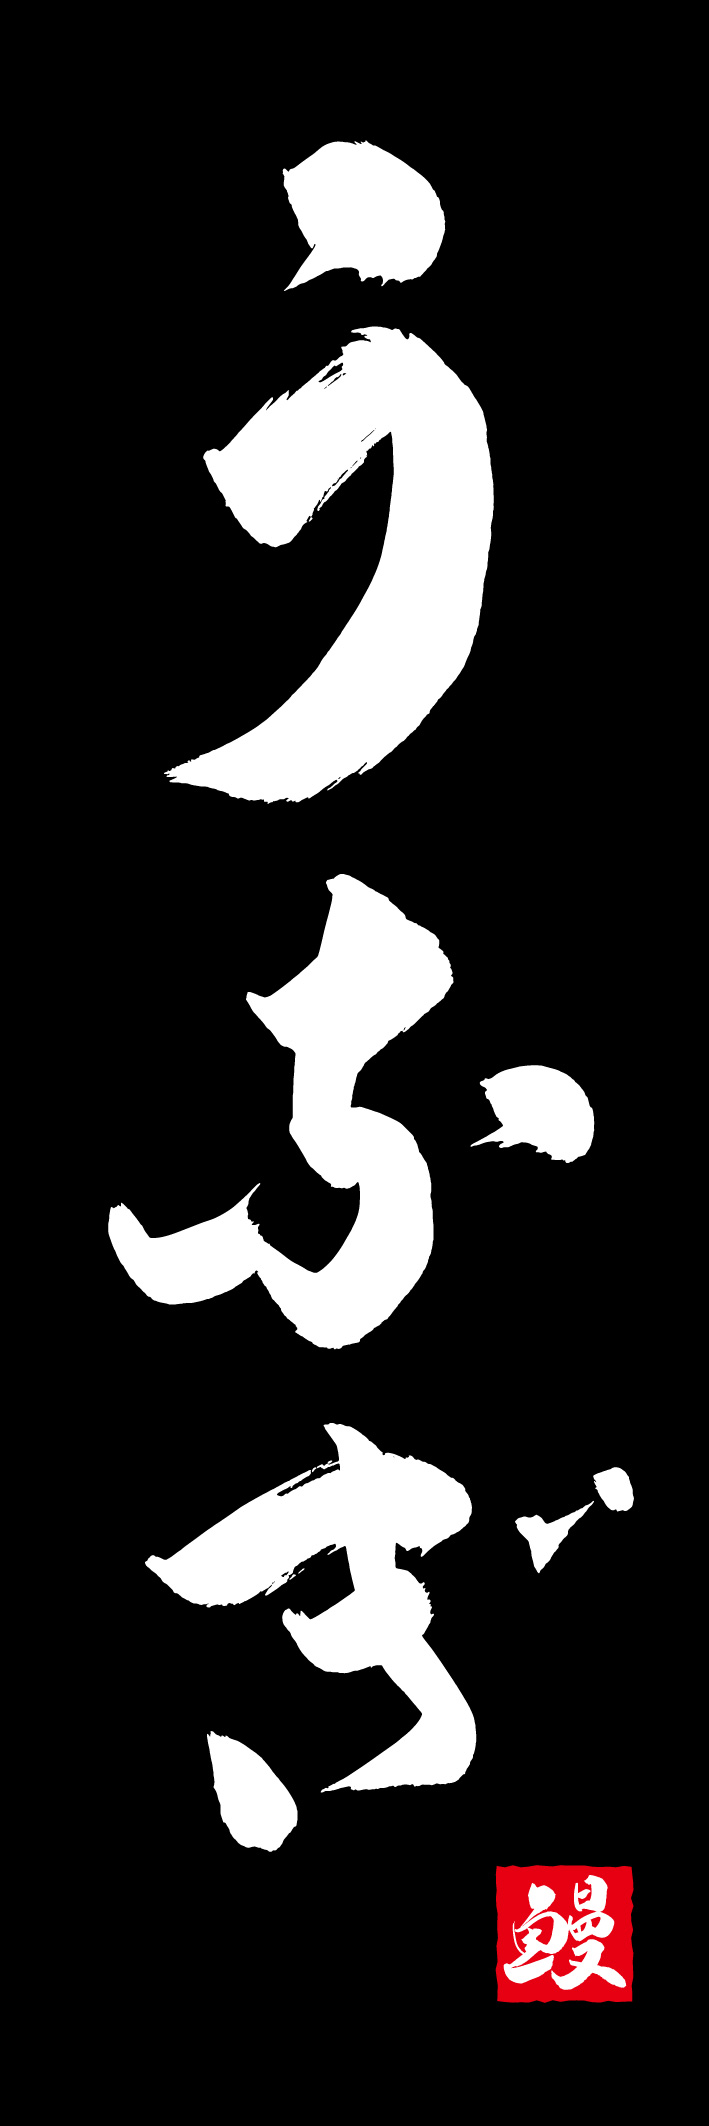 うなぎ 217_02 「うなぎ」ののぼりです。江戸文字職人 加藤木大介氏による、手書きの筆文字です。完全書き下ろし、唯一無二ののぼりは当店だけのオリジナル商品です（T.M）